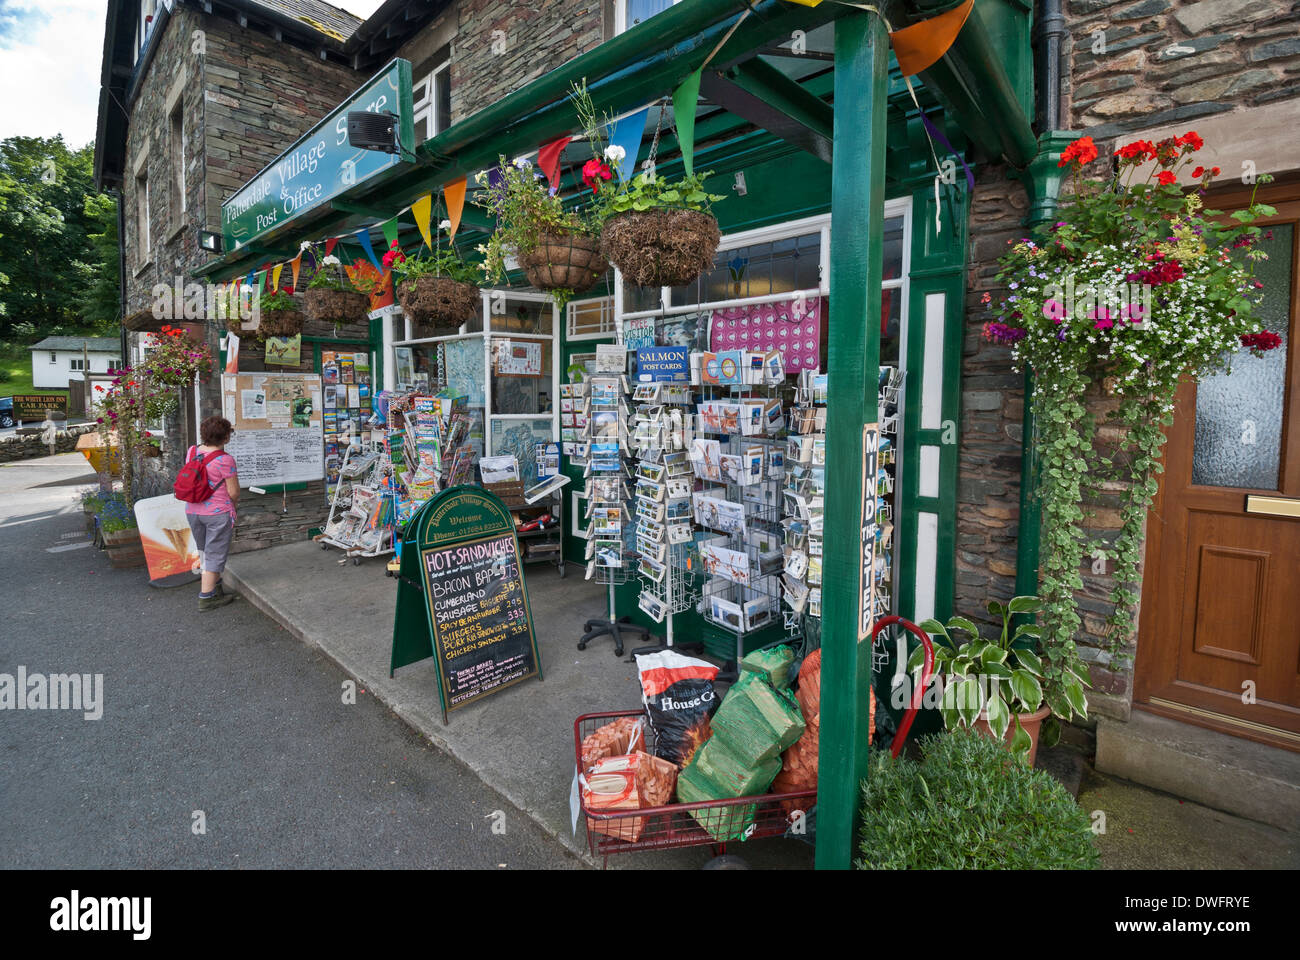 Patterdale negozio del villaggio e Post Office, sulla rotta di Wainwright's coast-to-coast a piedi, Lake District, Cumbria Foto Stock